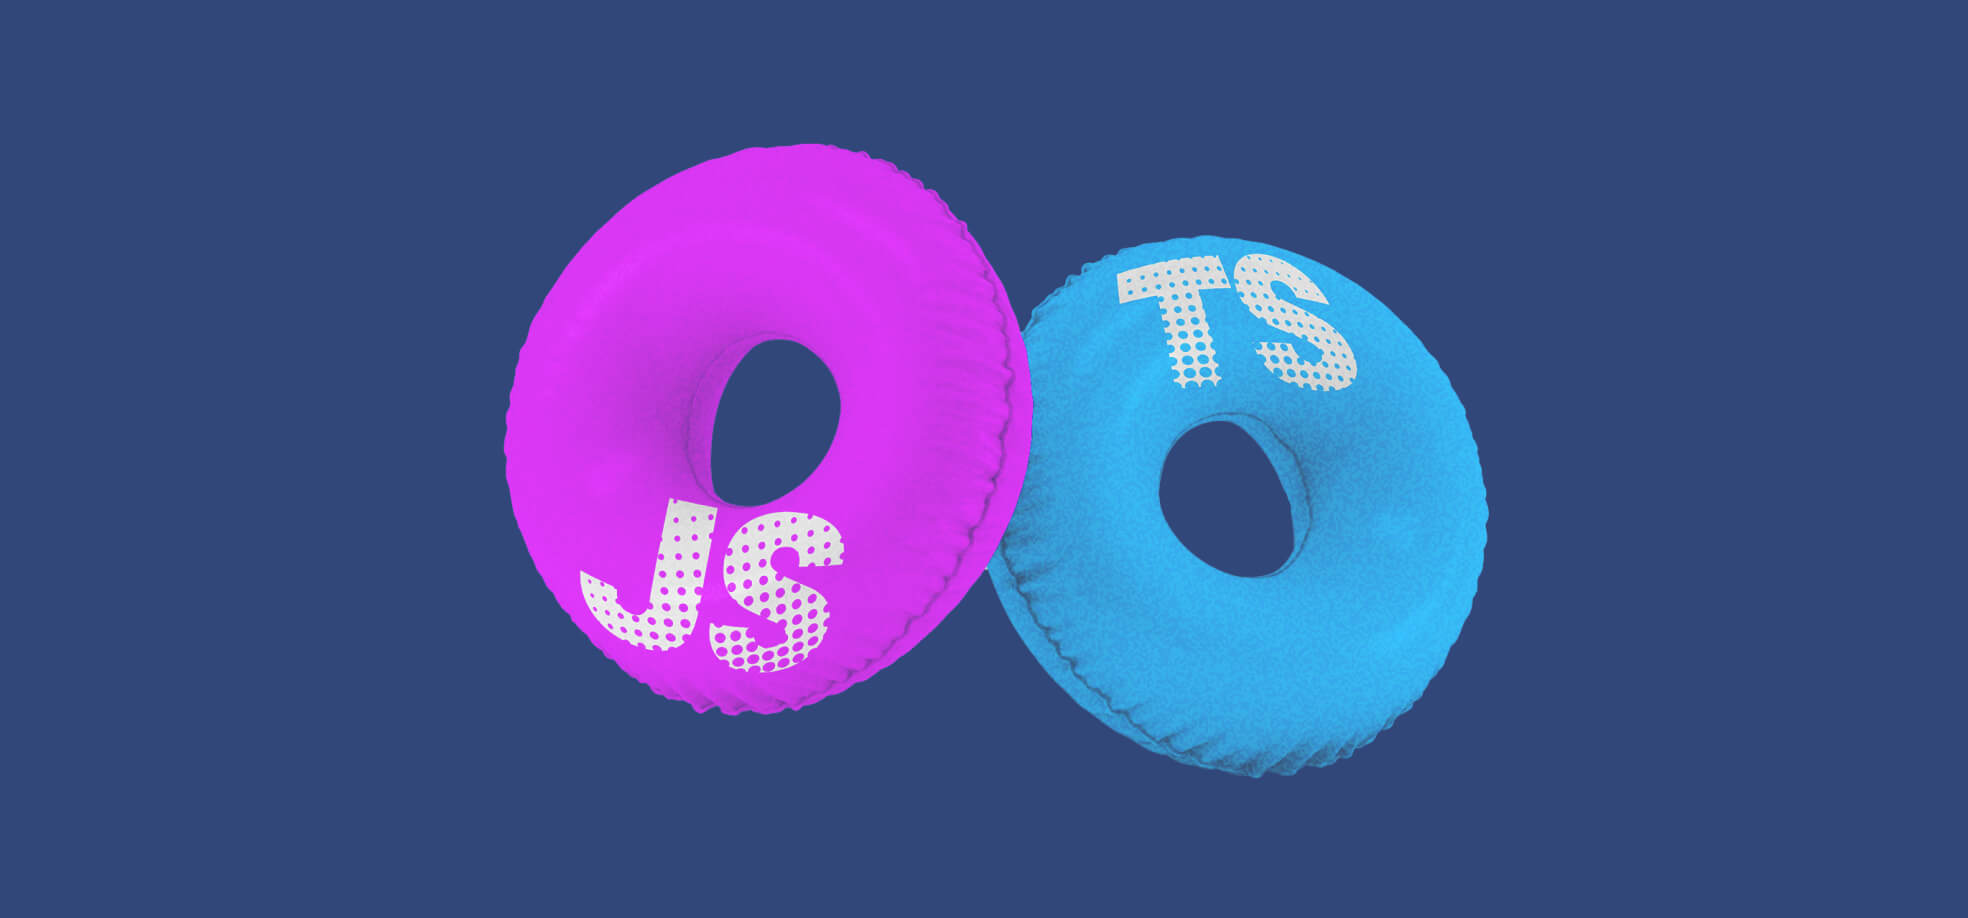  TypeScript vs JavaScript: donut shaped cushion illustrations